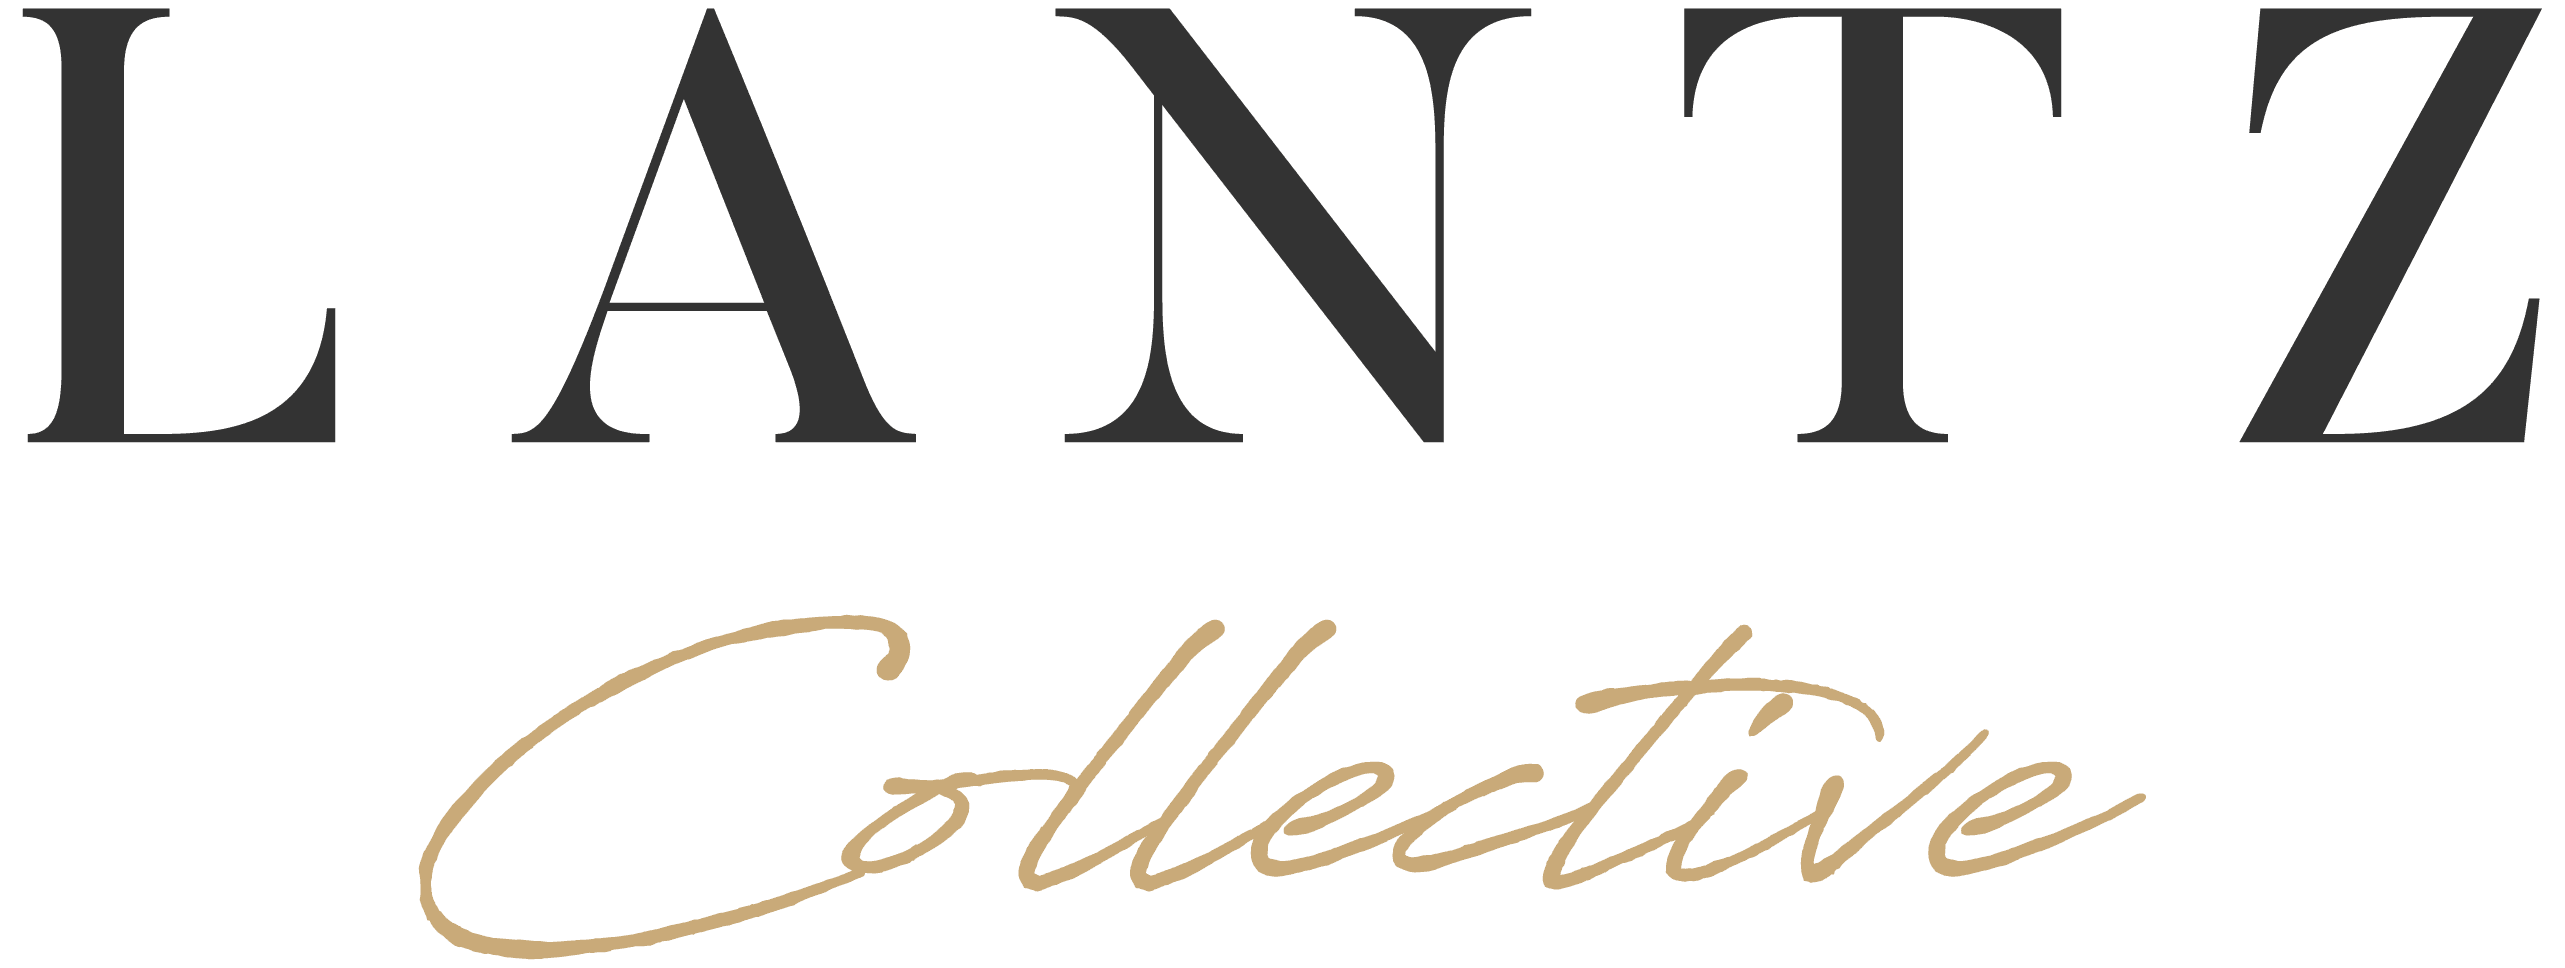 Lantz Collective and A. Lantz Design Logo